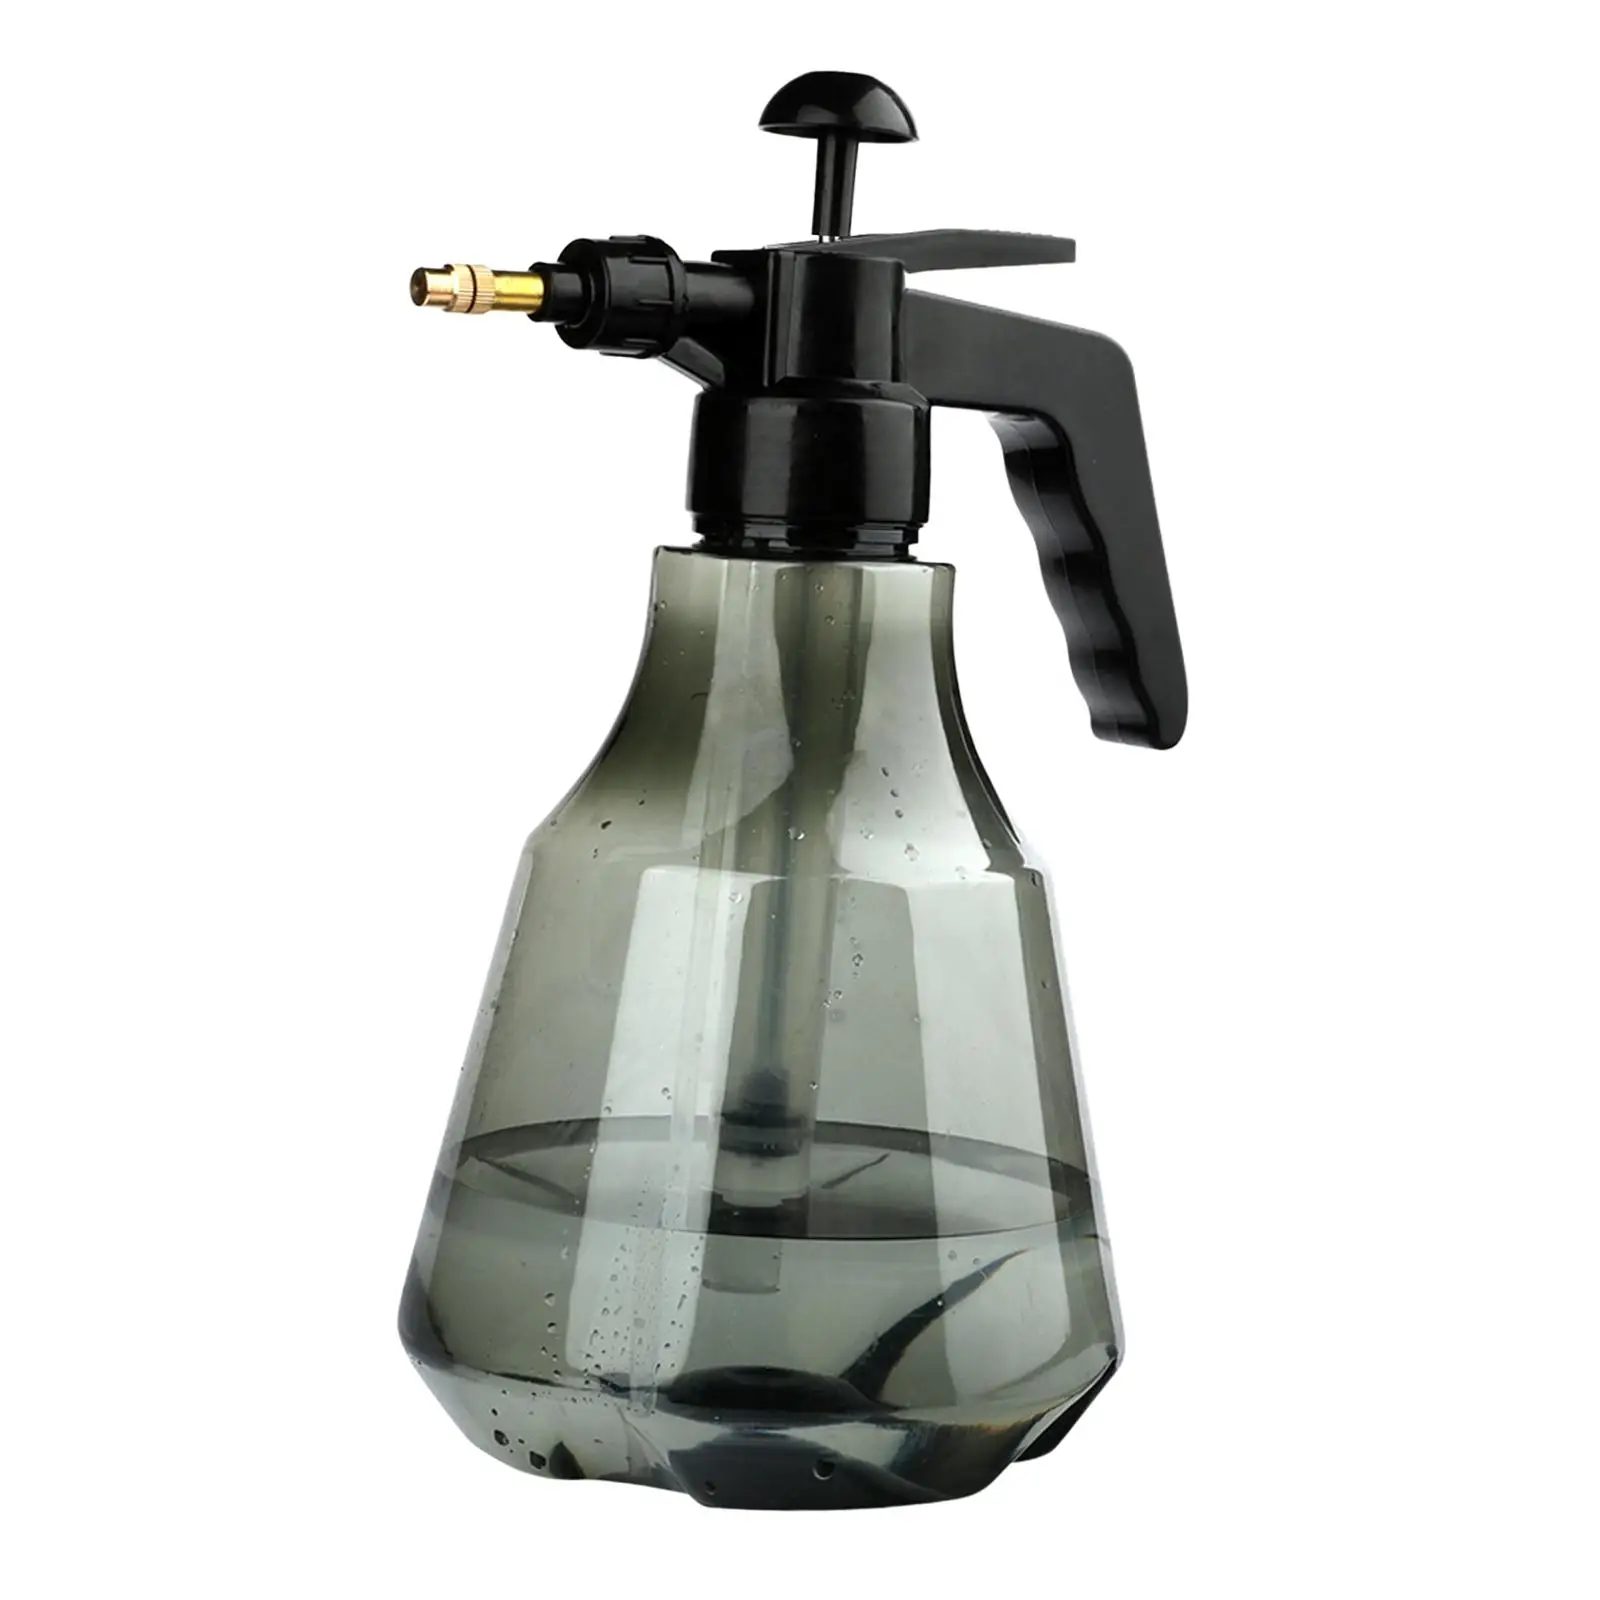 Garden Sprayer Spray Bottle Pressure Pump Sprayer for Indoor Outdoor Garage